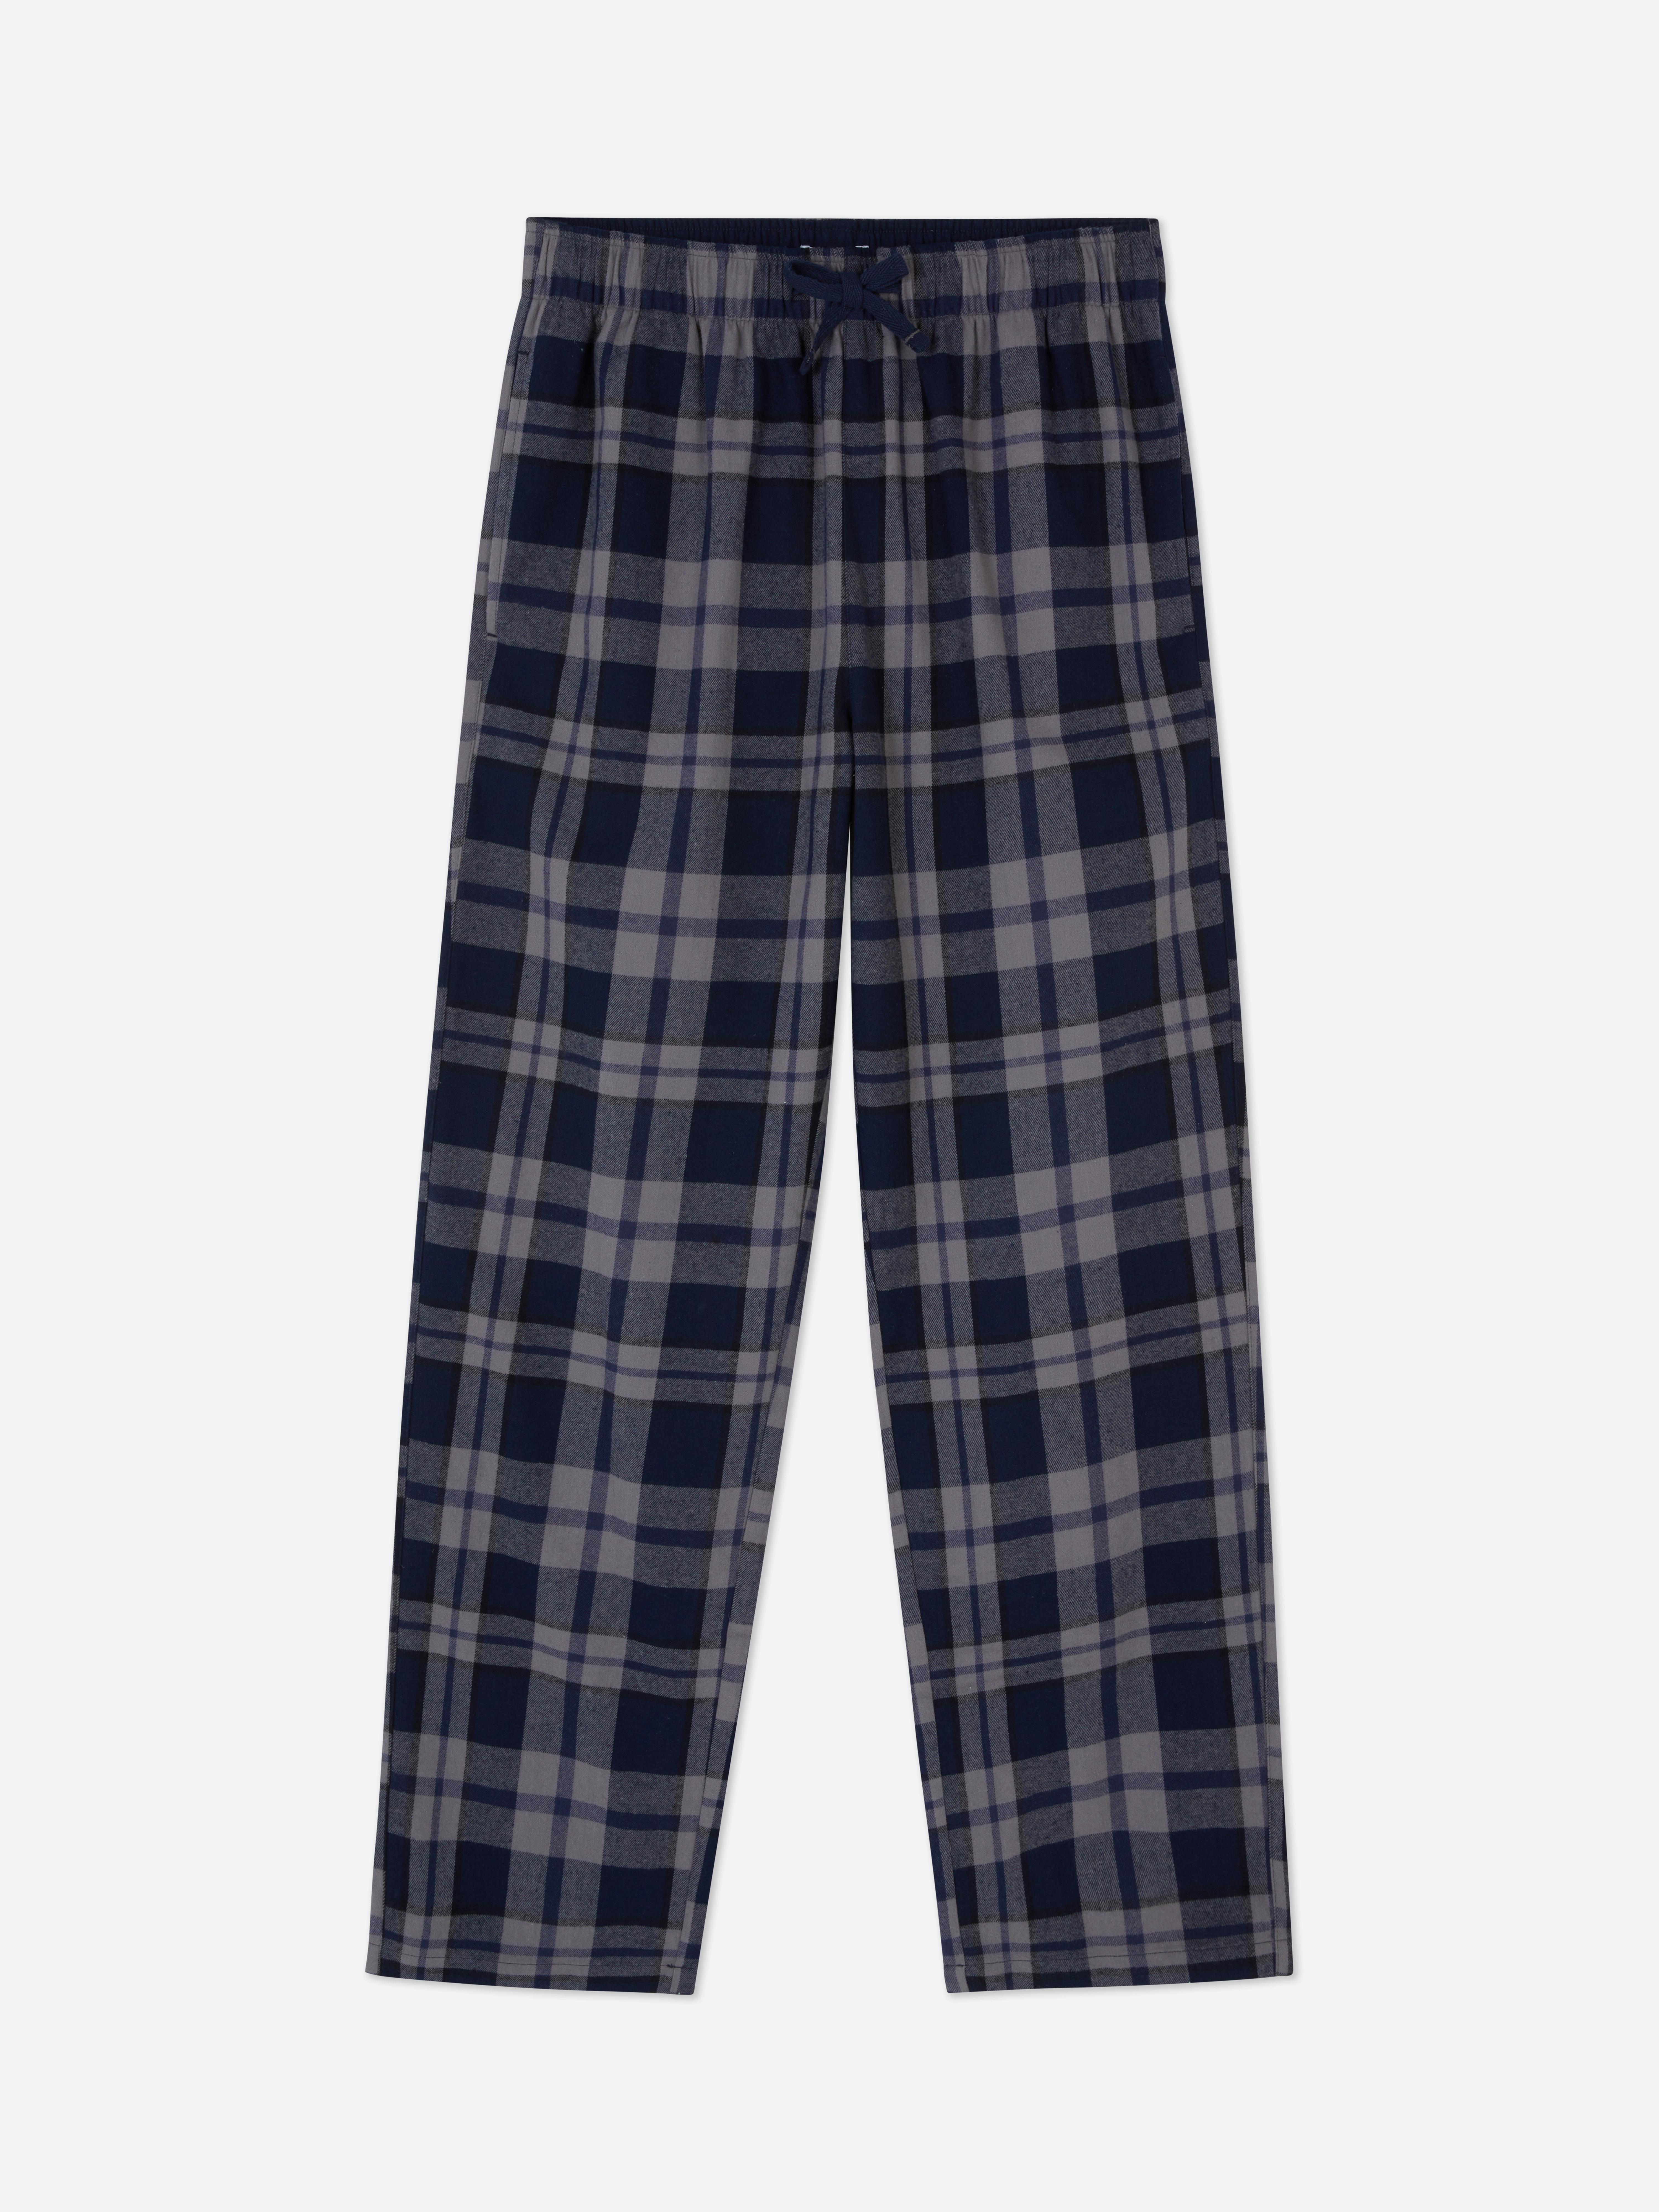 Pijamas para hombre | Pantalones y conjuntos de pijama para hombre | Primark